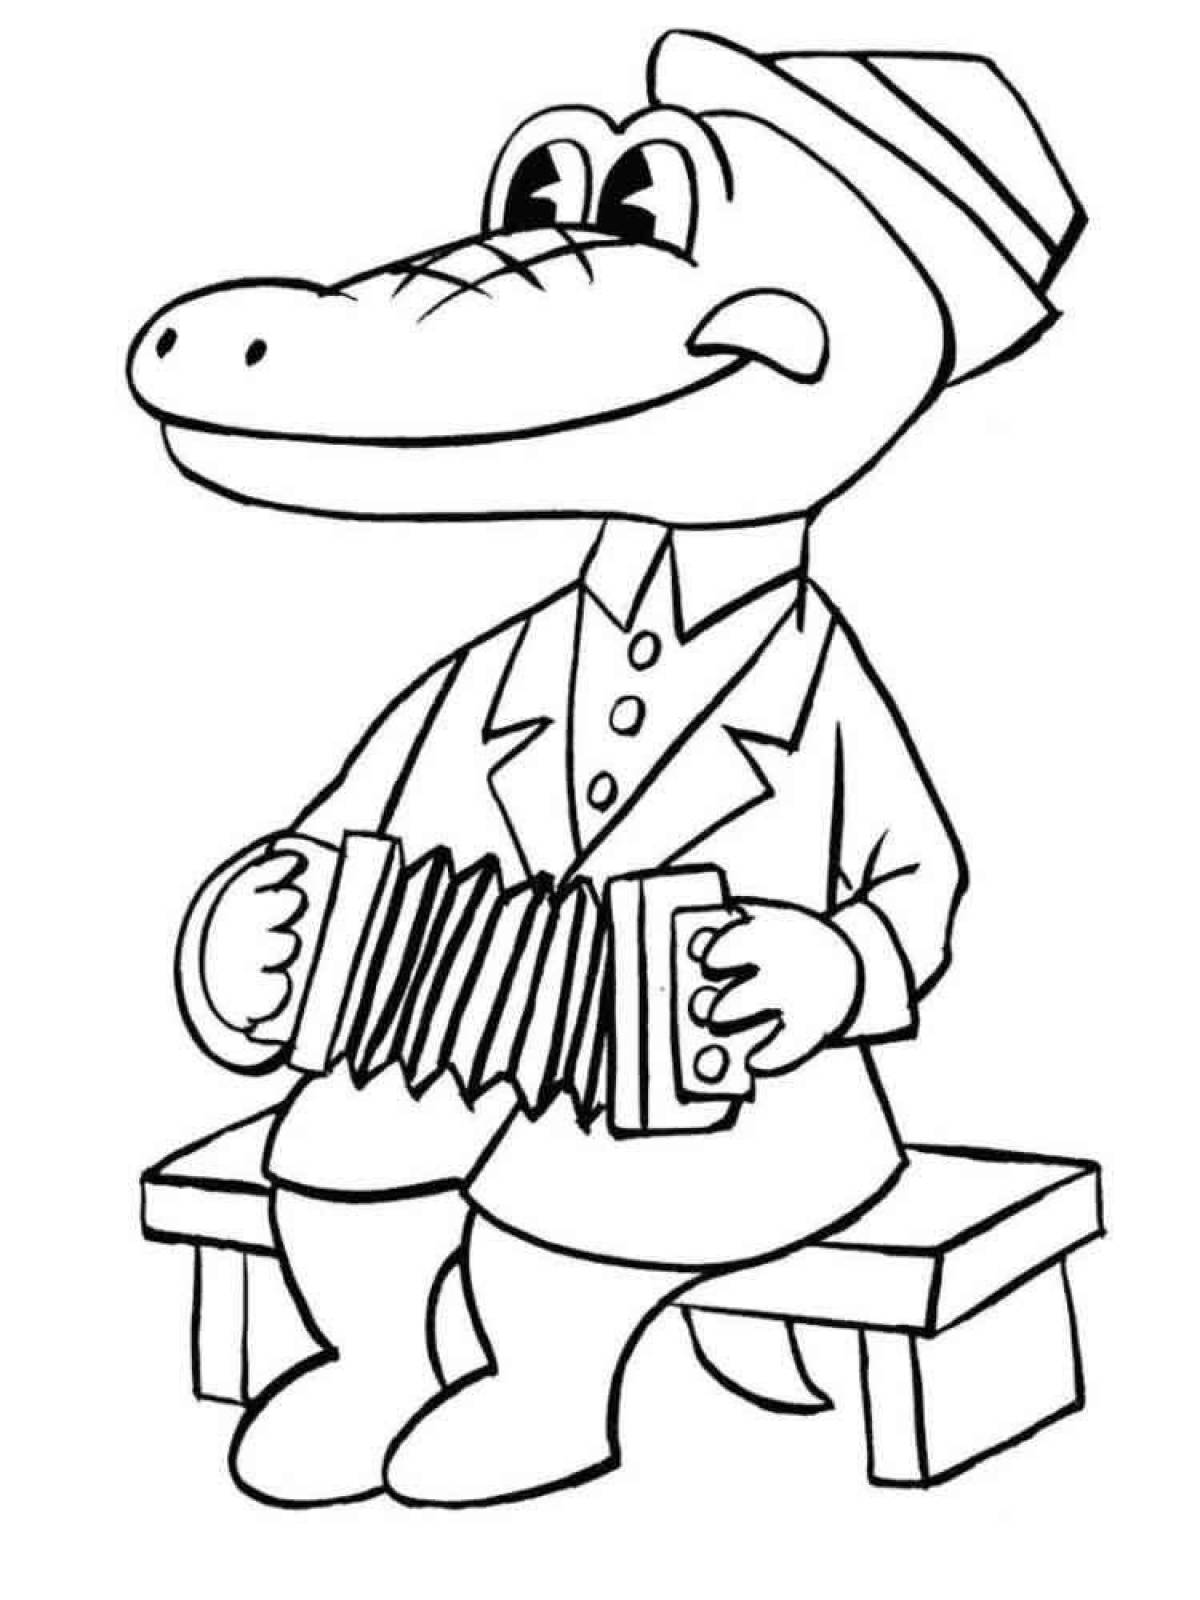 Humorous cheburashka and crocodile gene coloring